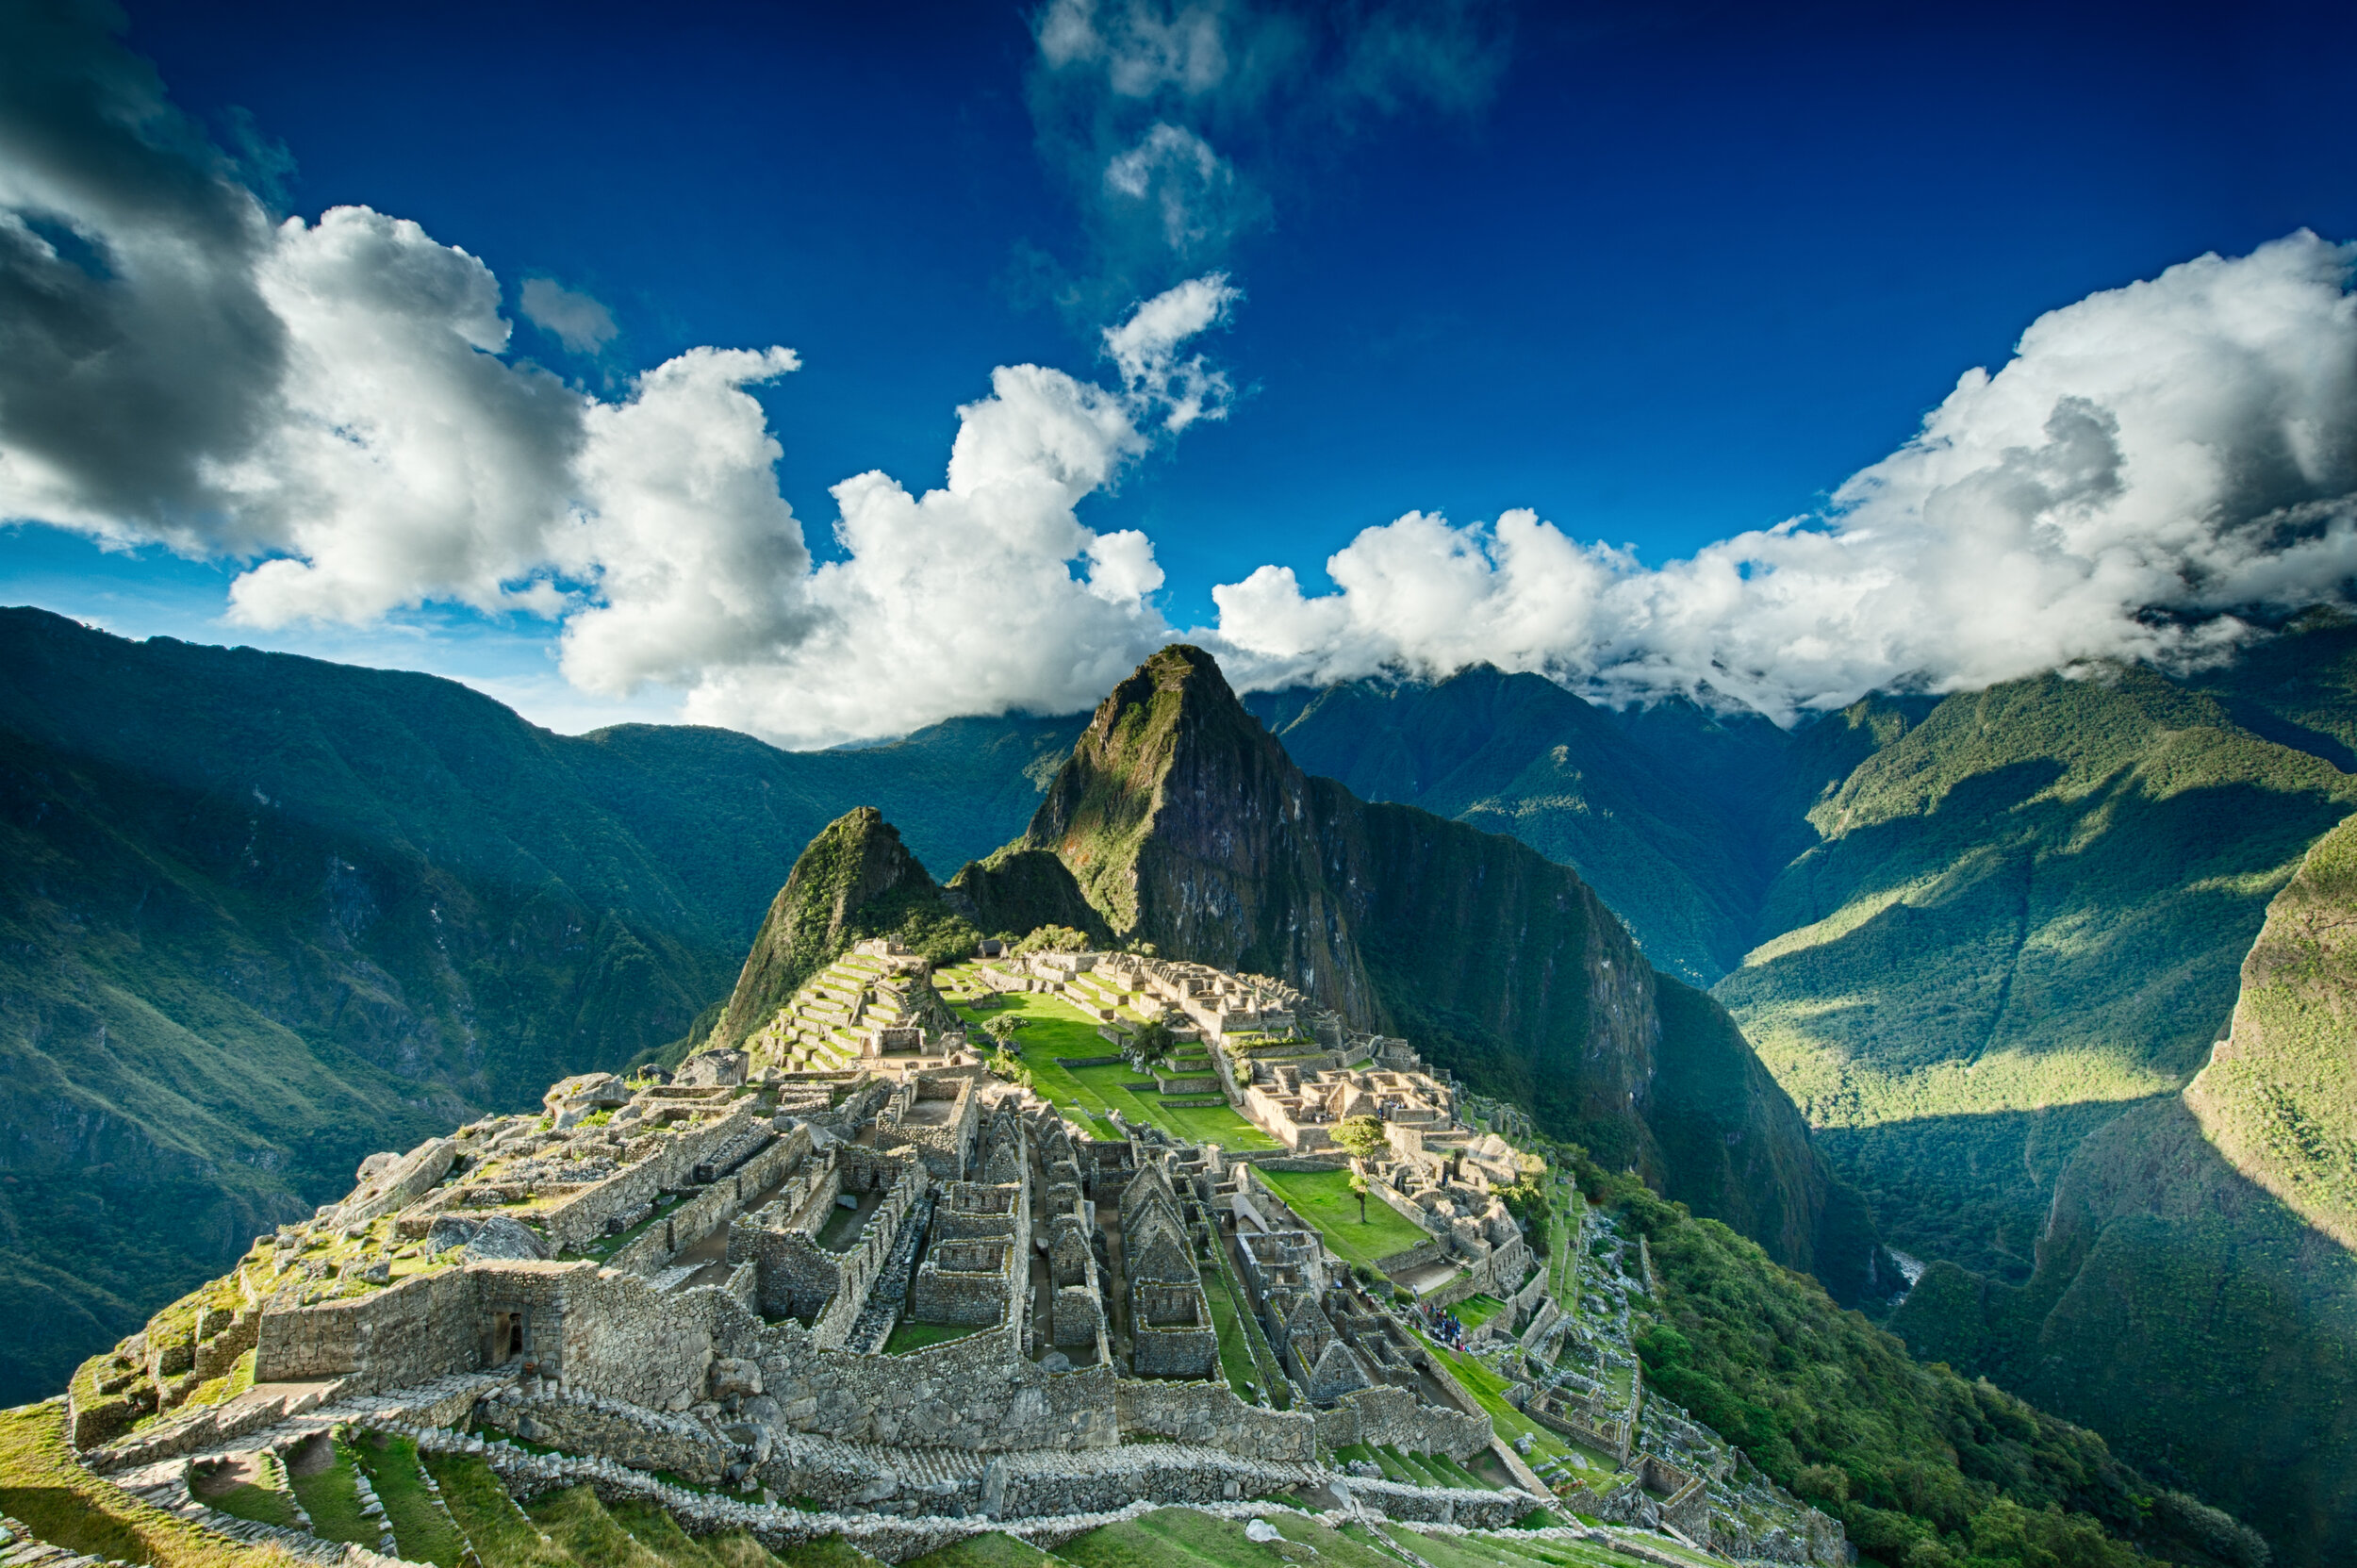 2) Sanctuary of Machu Picchu